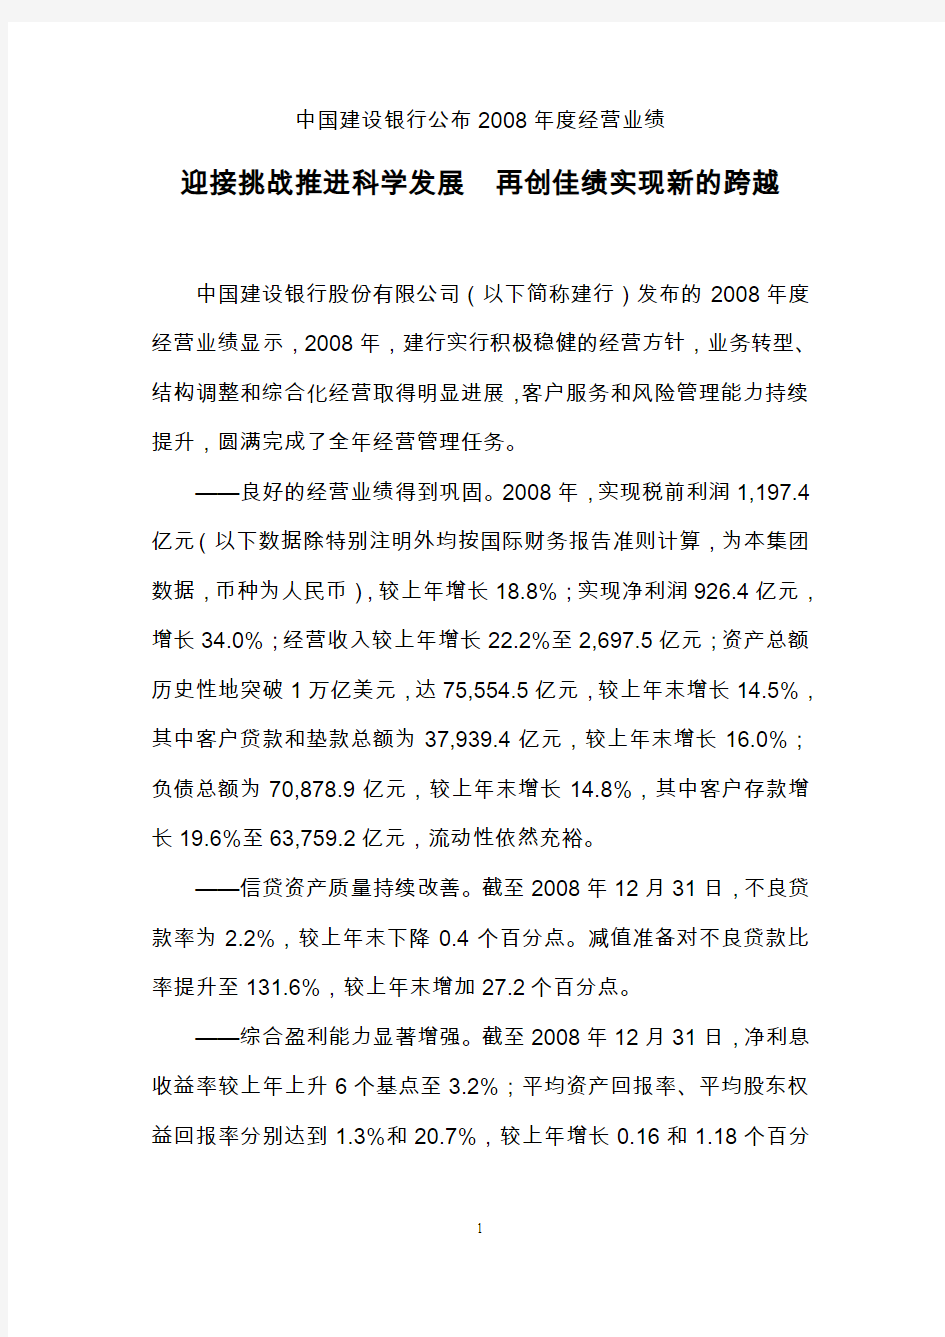 中国建设银行公布2008年年报